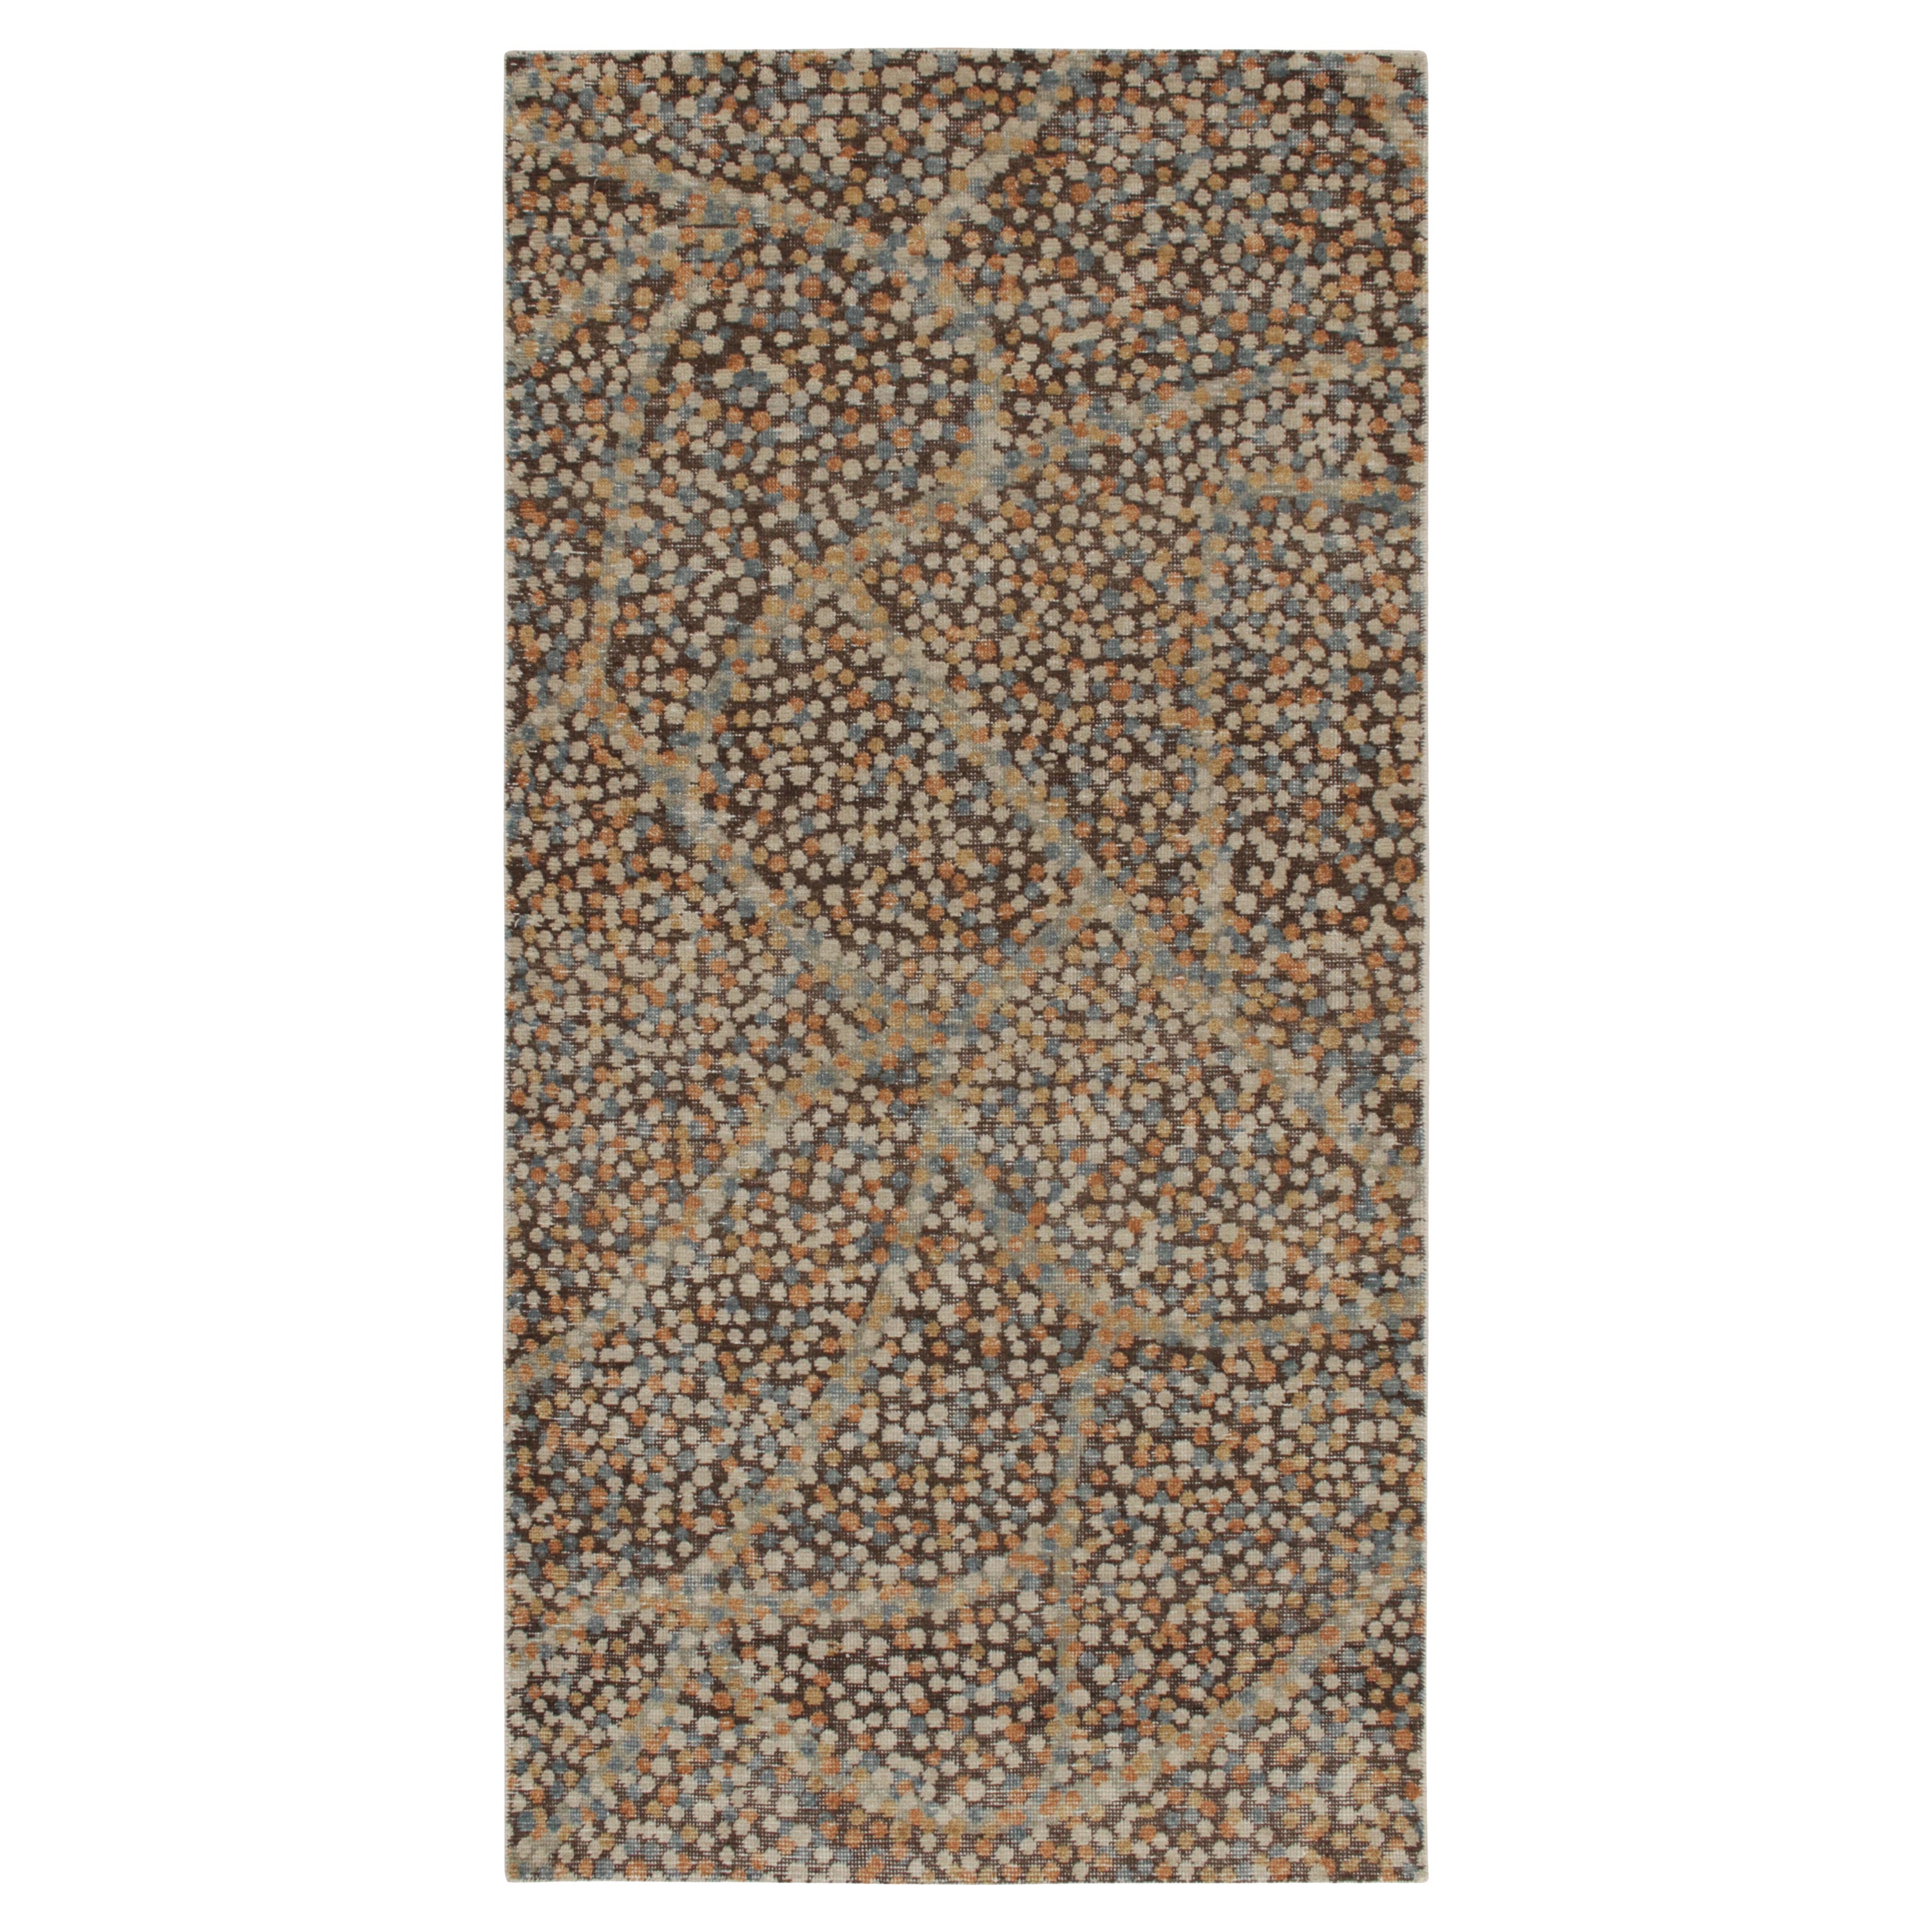 Abstrakter Teppich im Distressed-Stil von Rug & Kilim in Braun mit buntem Punkte-Muster